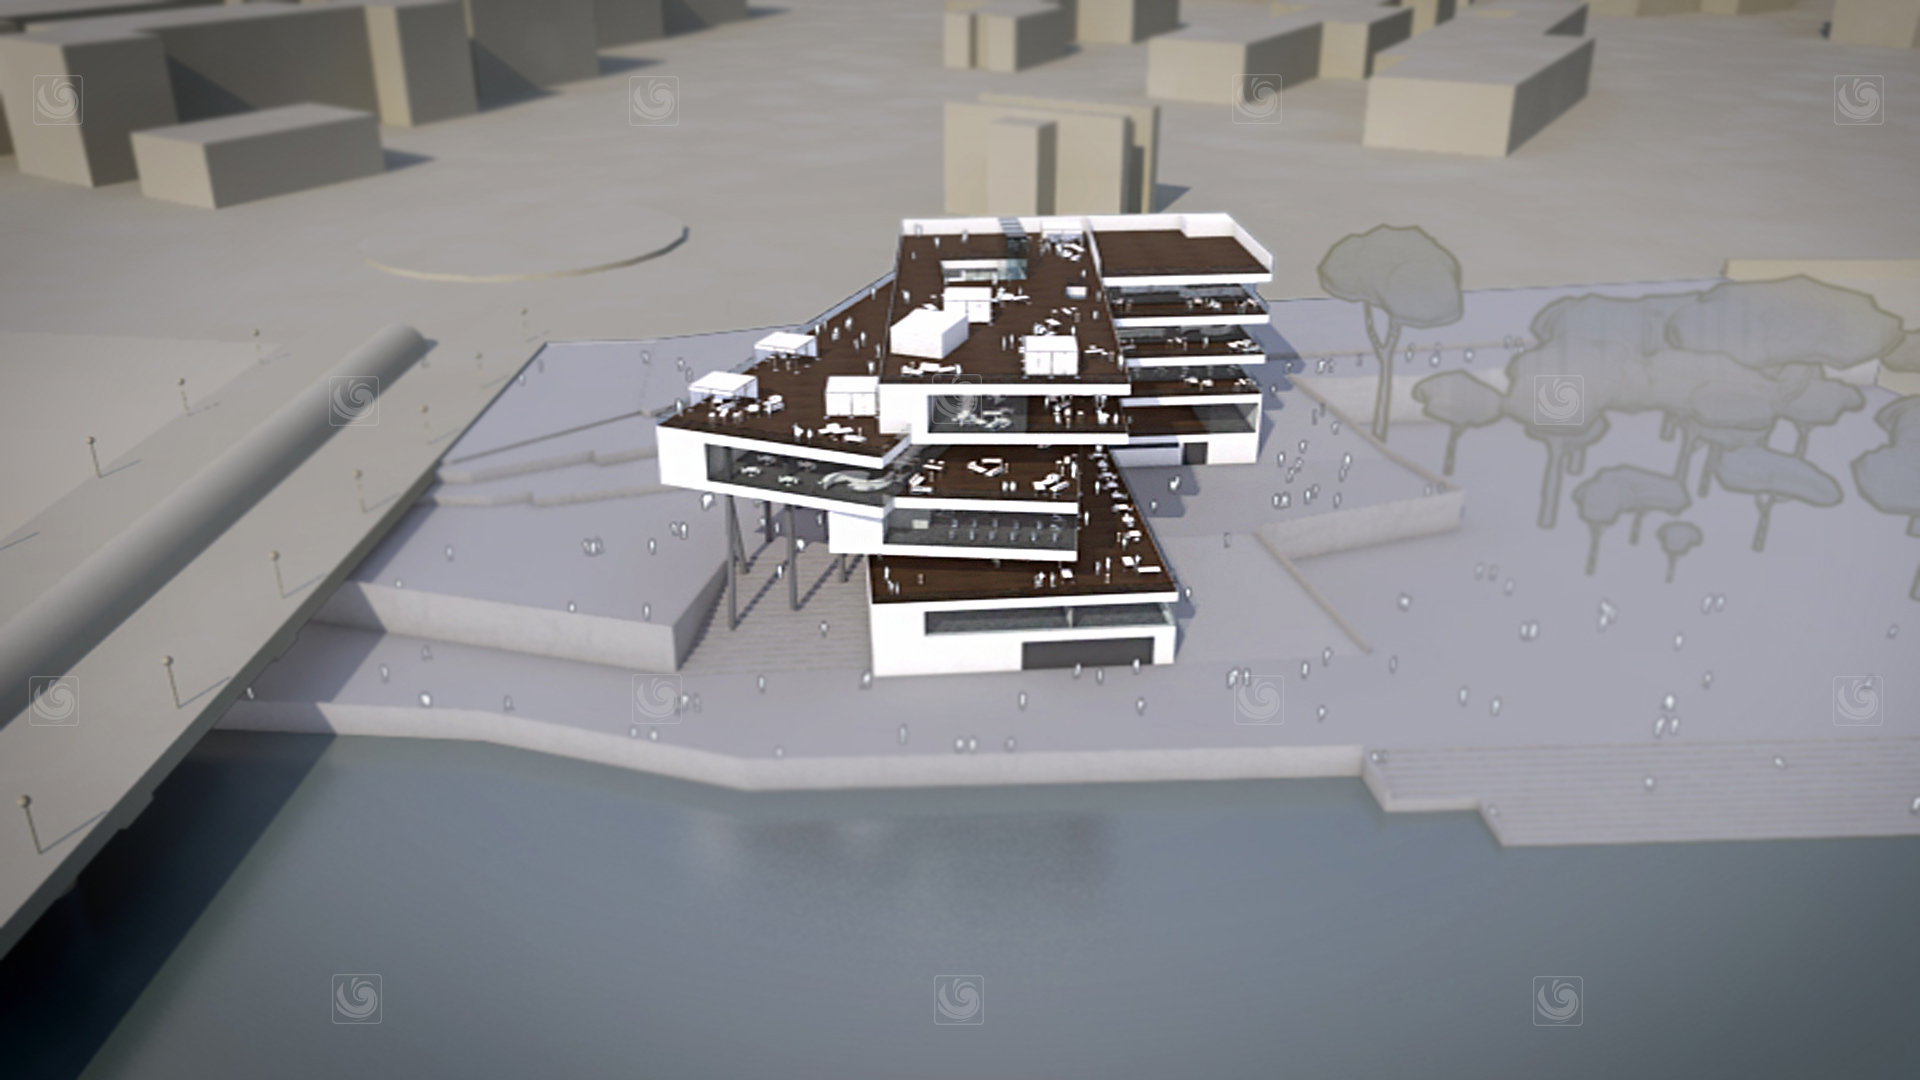 Fotograma de animación 3D mostrando una vista general del edificio River Hall Center, junto al Ebro a su paso por Zaragoza